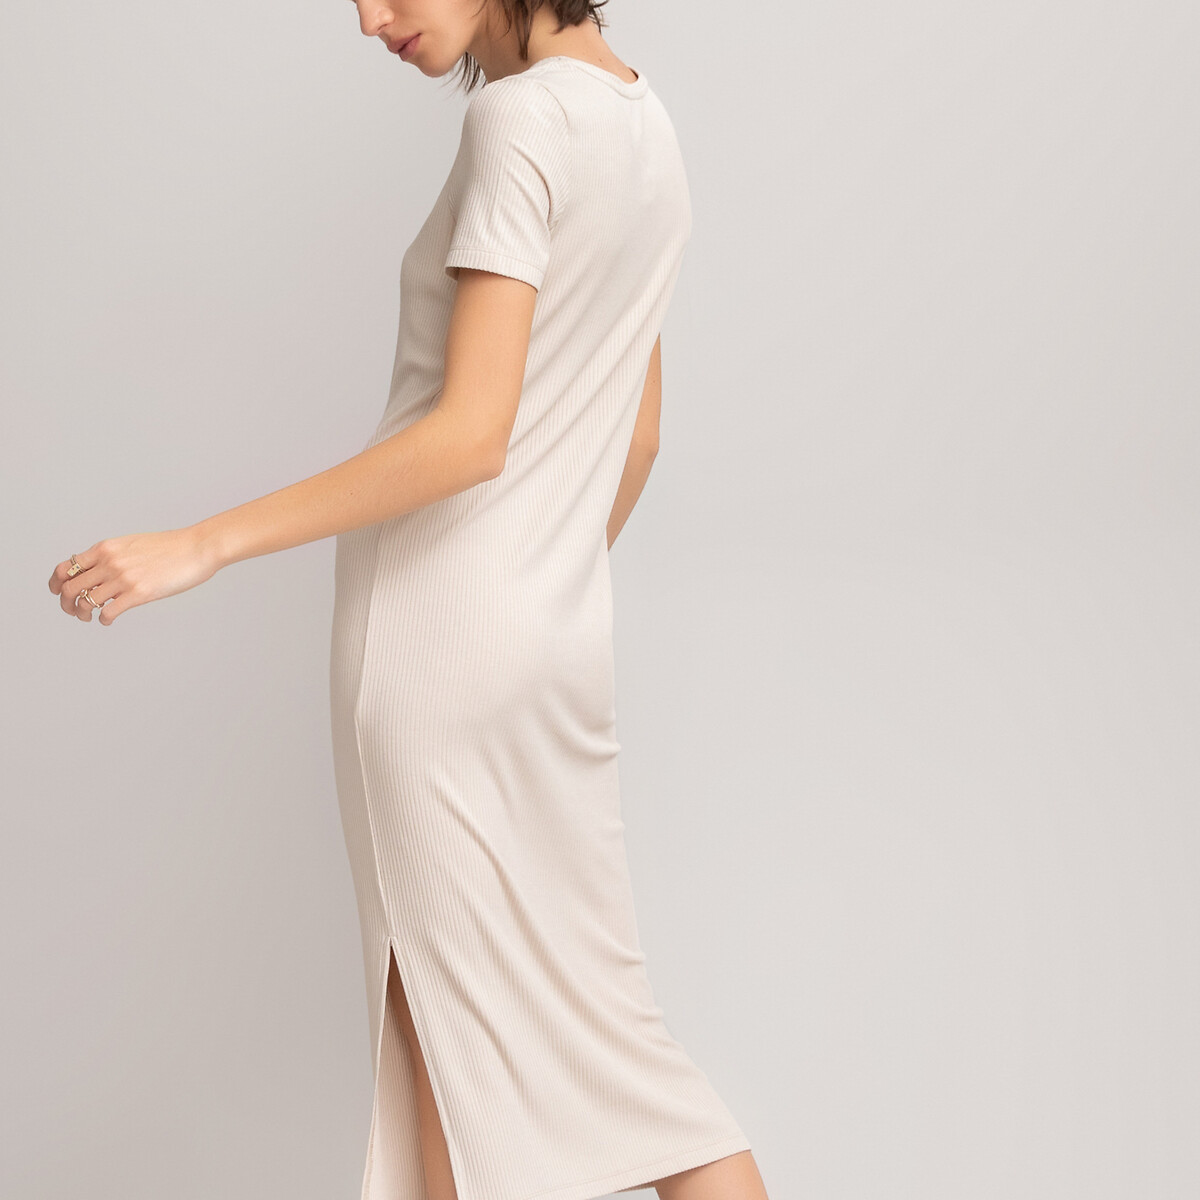 Платье LaRedoute С короткими рукавами из рифленого трикотажа стрейч S бежевый, размер S - фото 3